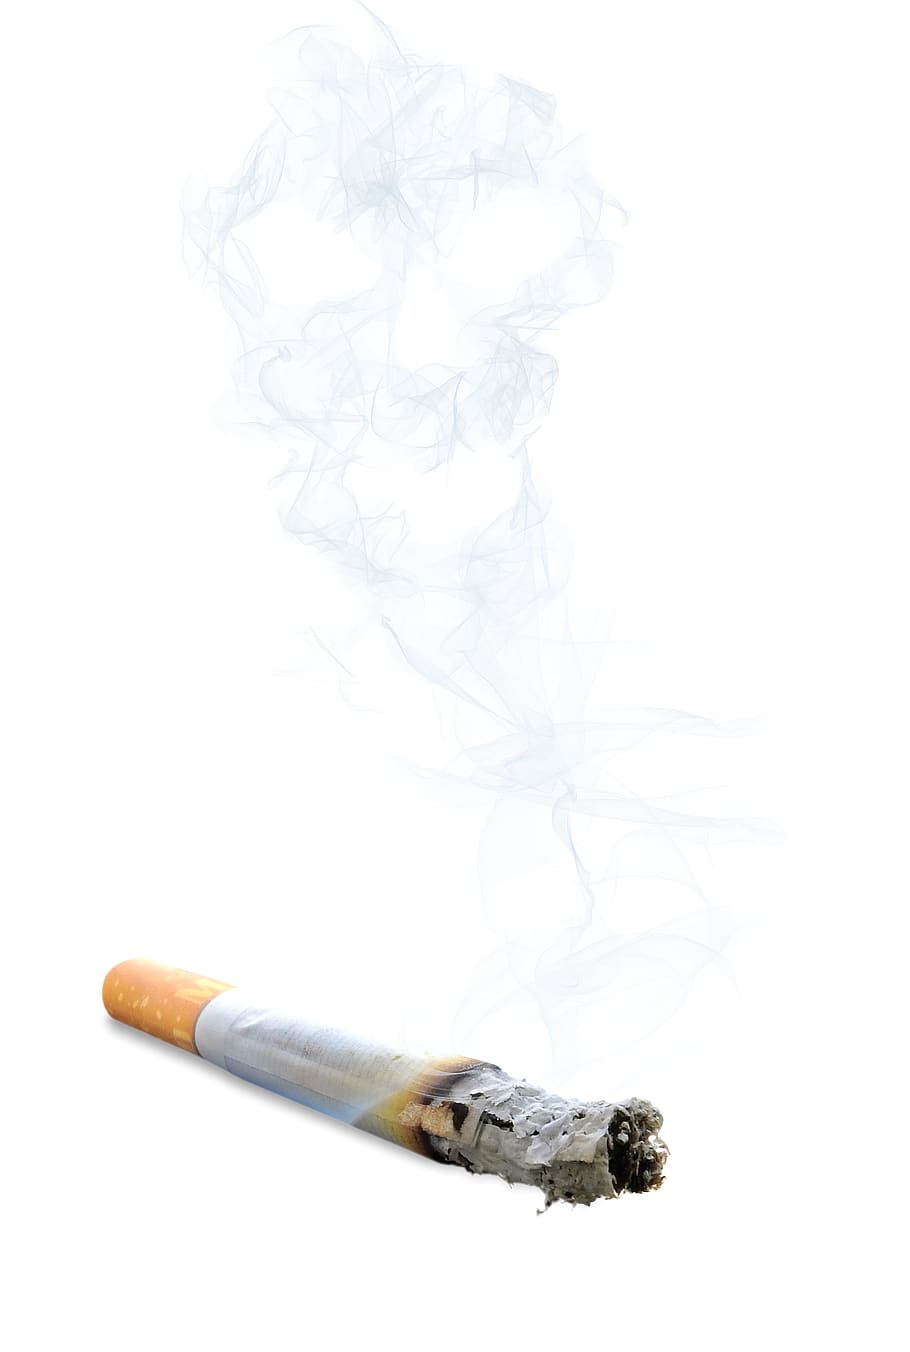 cigarrillo, tabaquismo, humo, brasas, cenizas, muerte, cráneo y huesos cruzados, adicción, insalubre, señal de advertencia